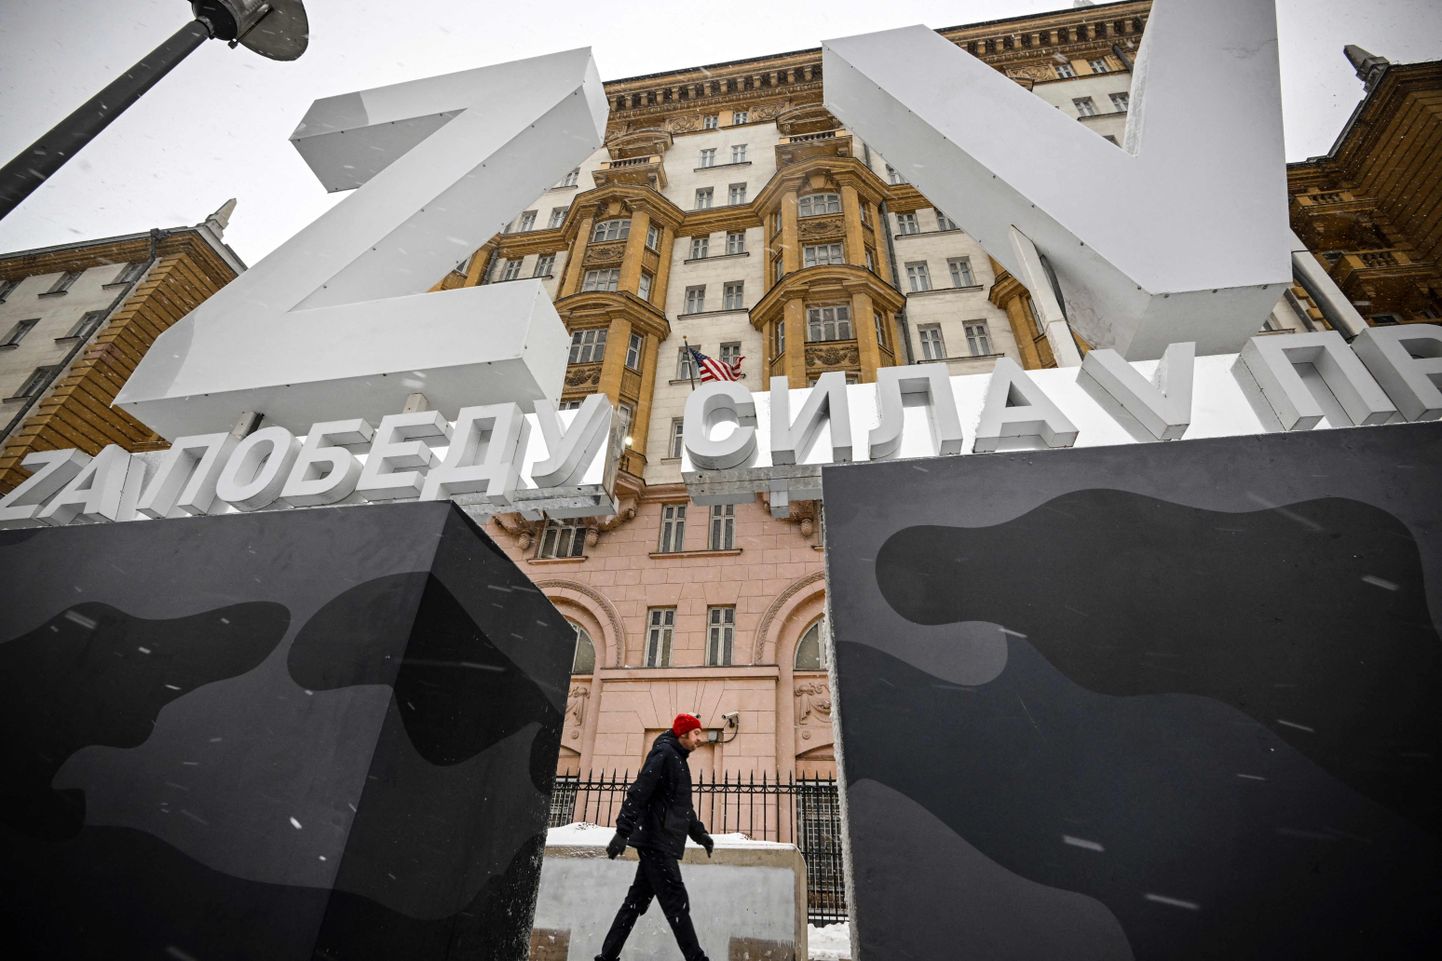 Посольство США в Москве. Перед зданием были установлены большие символы, оправдывающие войну.